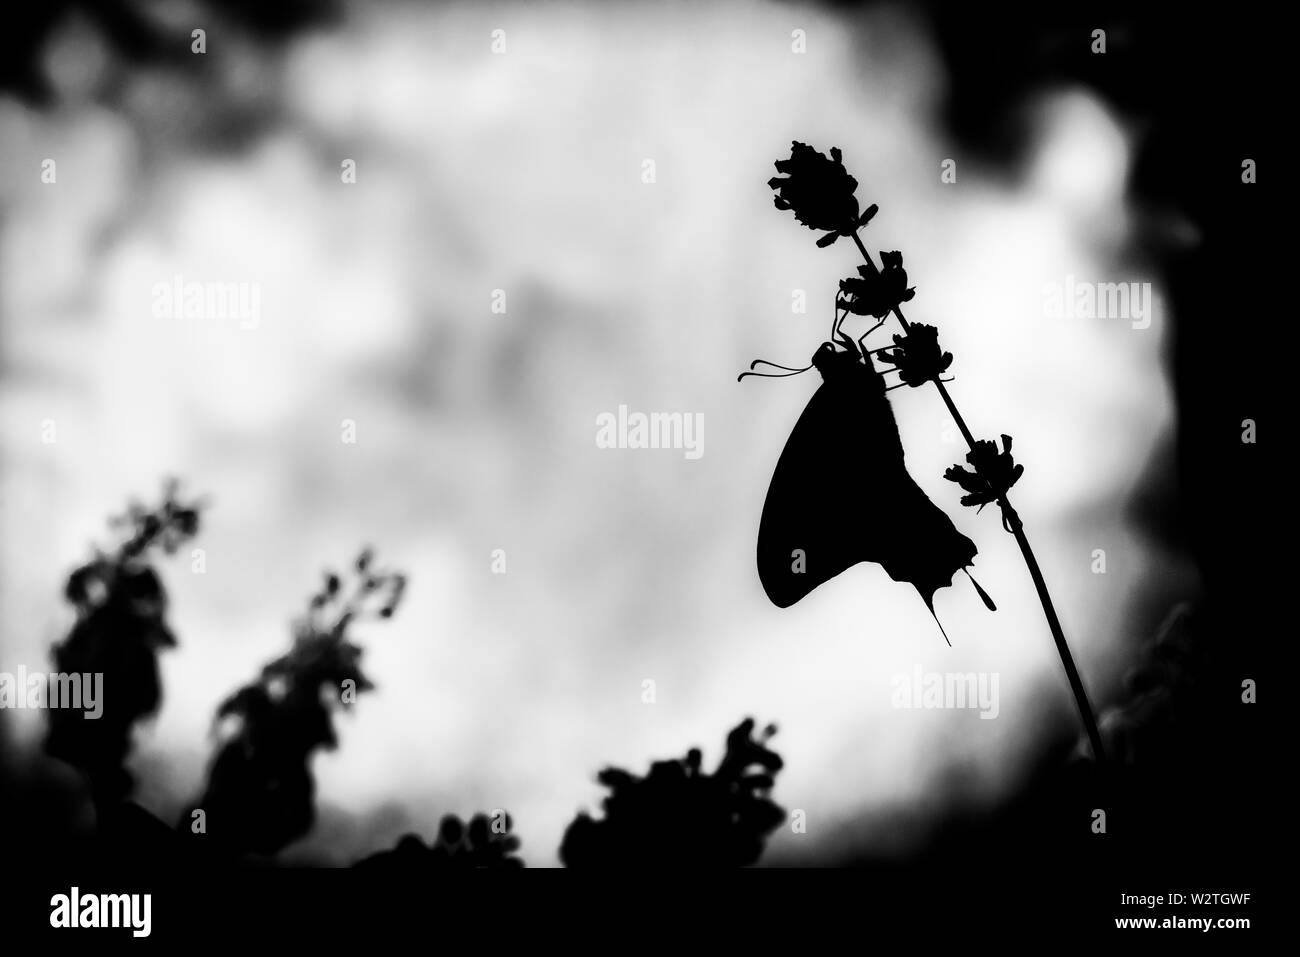 Noir et blanc rétro-éclairé (b&w) silhouette d'un swallowtail butterfly papilio rutulus - vue latérale Banque D'Images